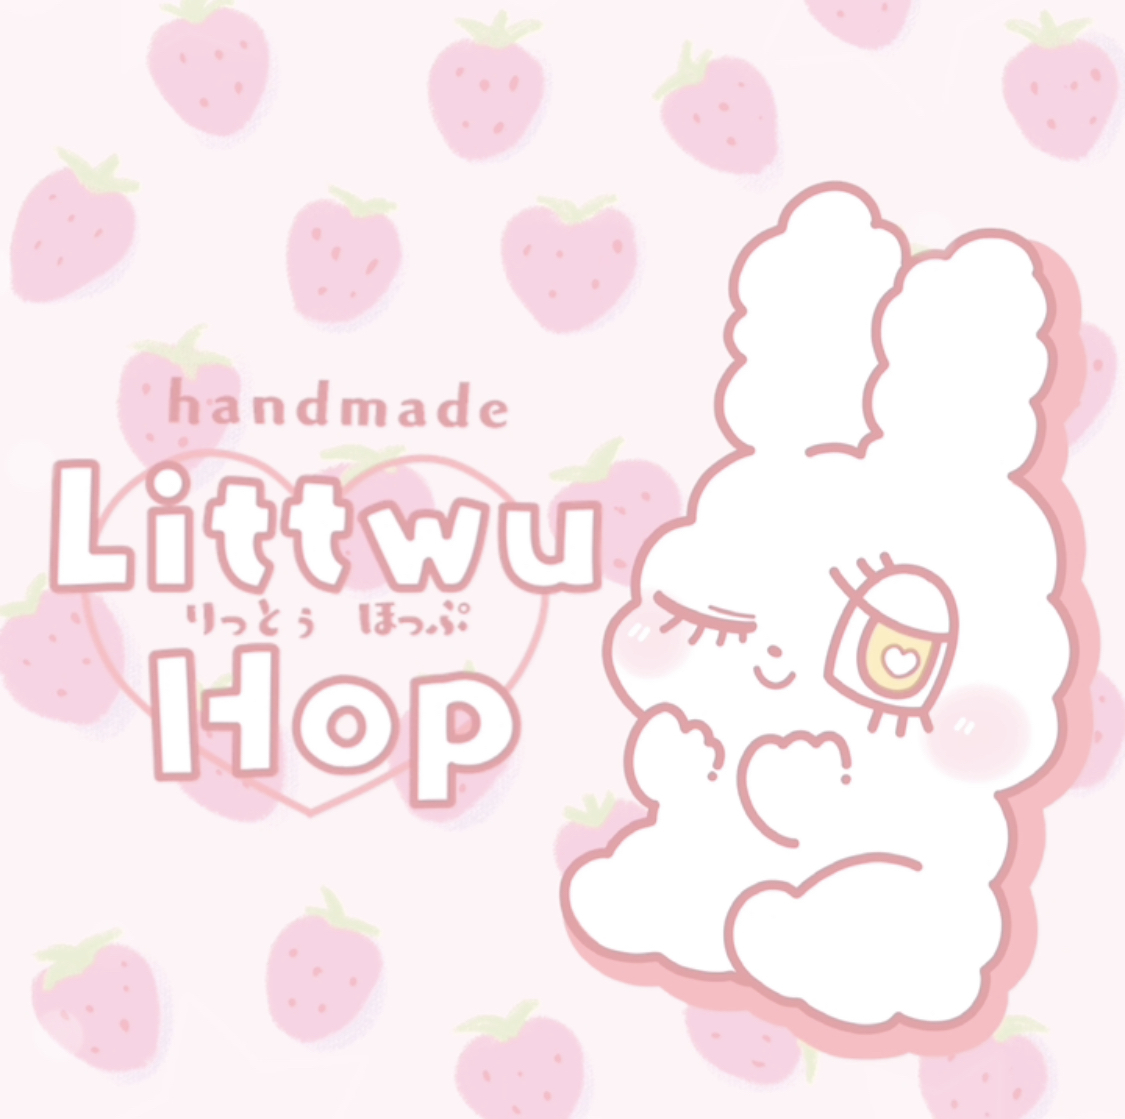 Littwu_Hop_shop